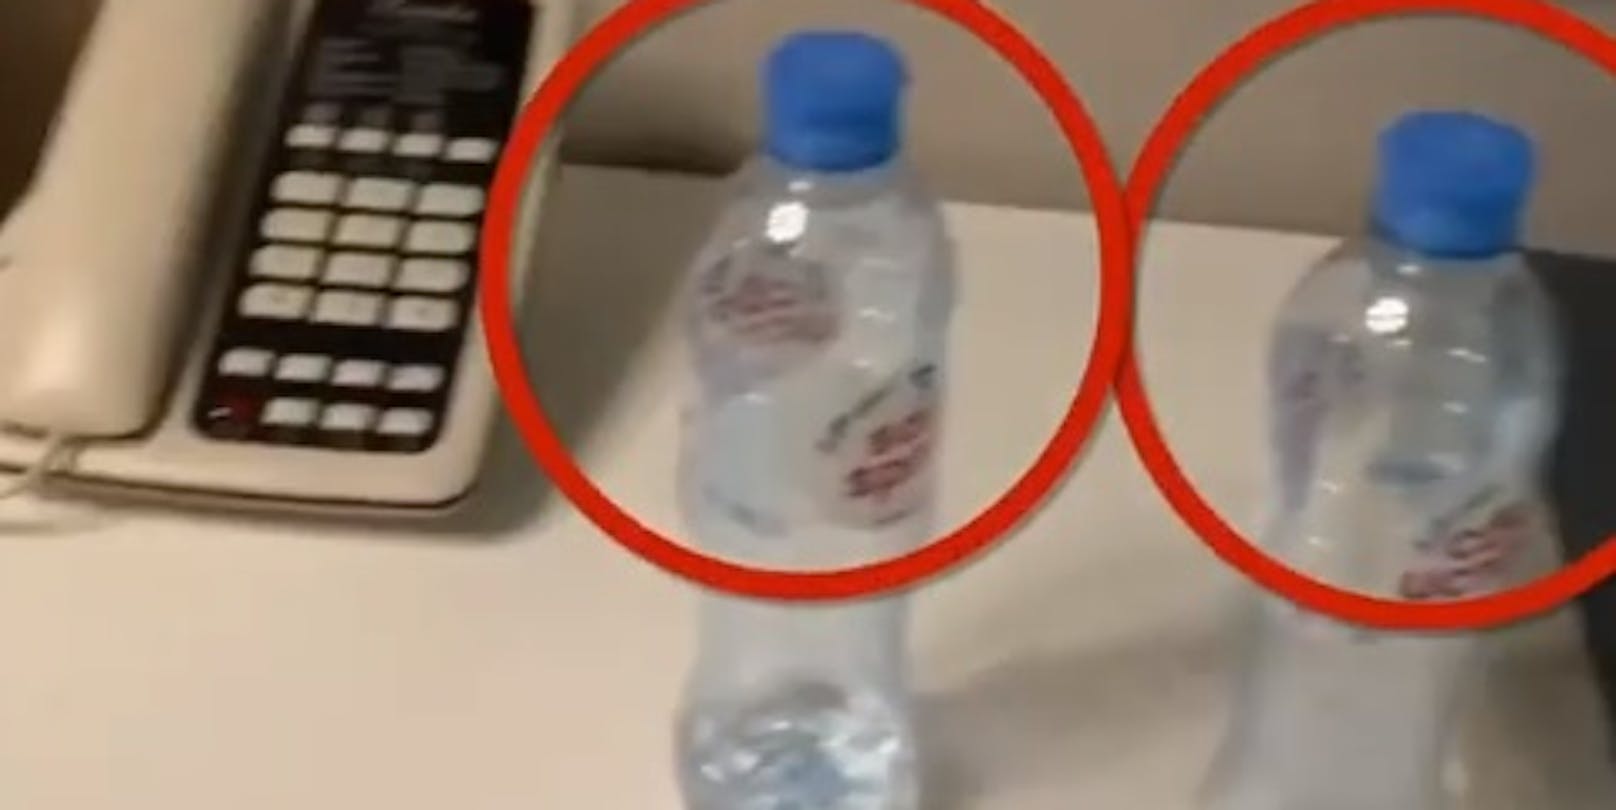 Auf dem Video sollen die vergifteten Wasserflaschen zu sehen sein.